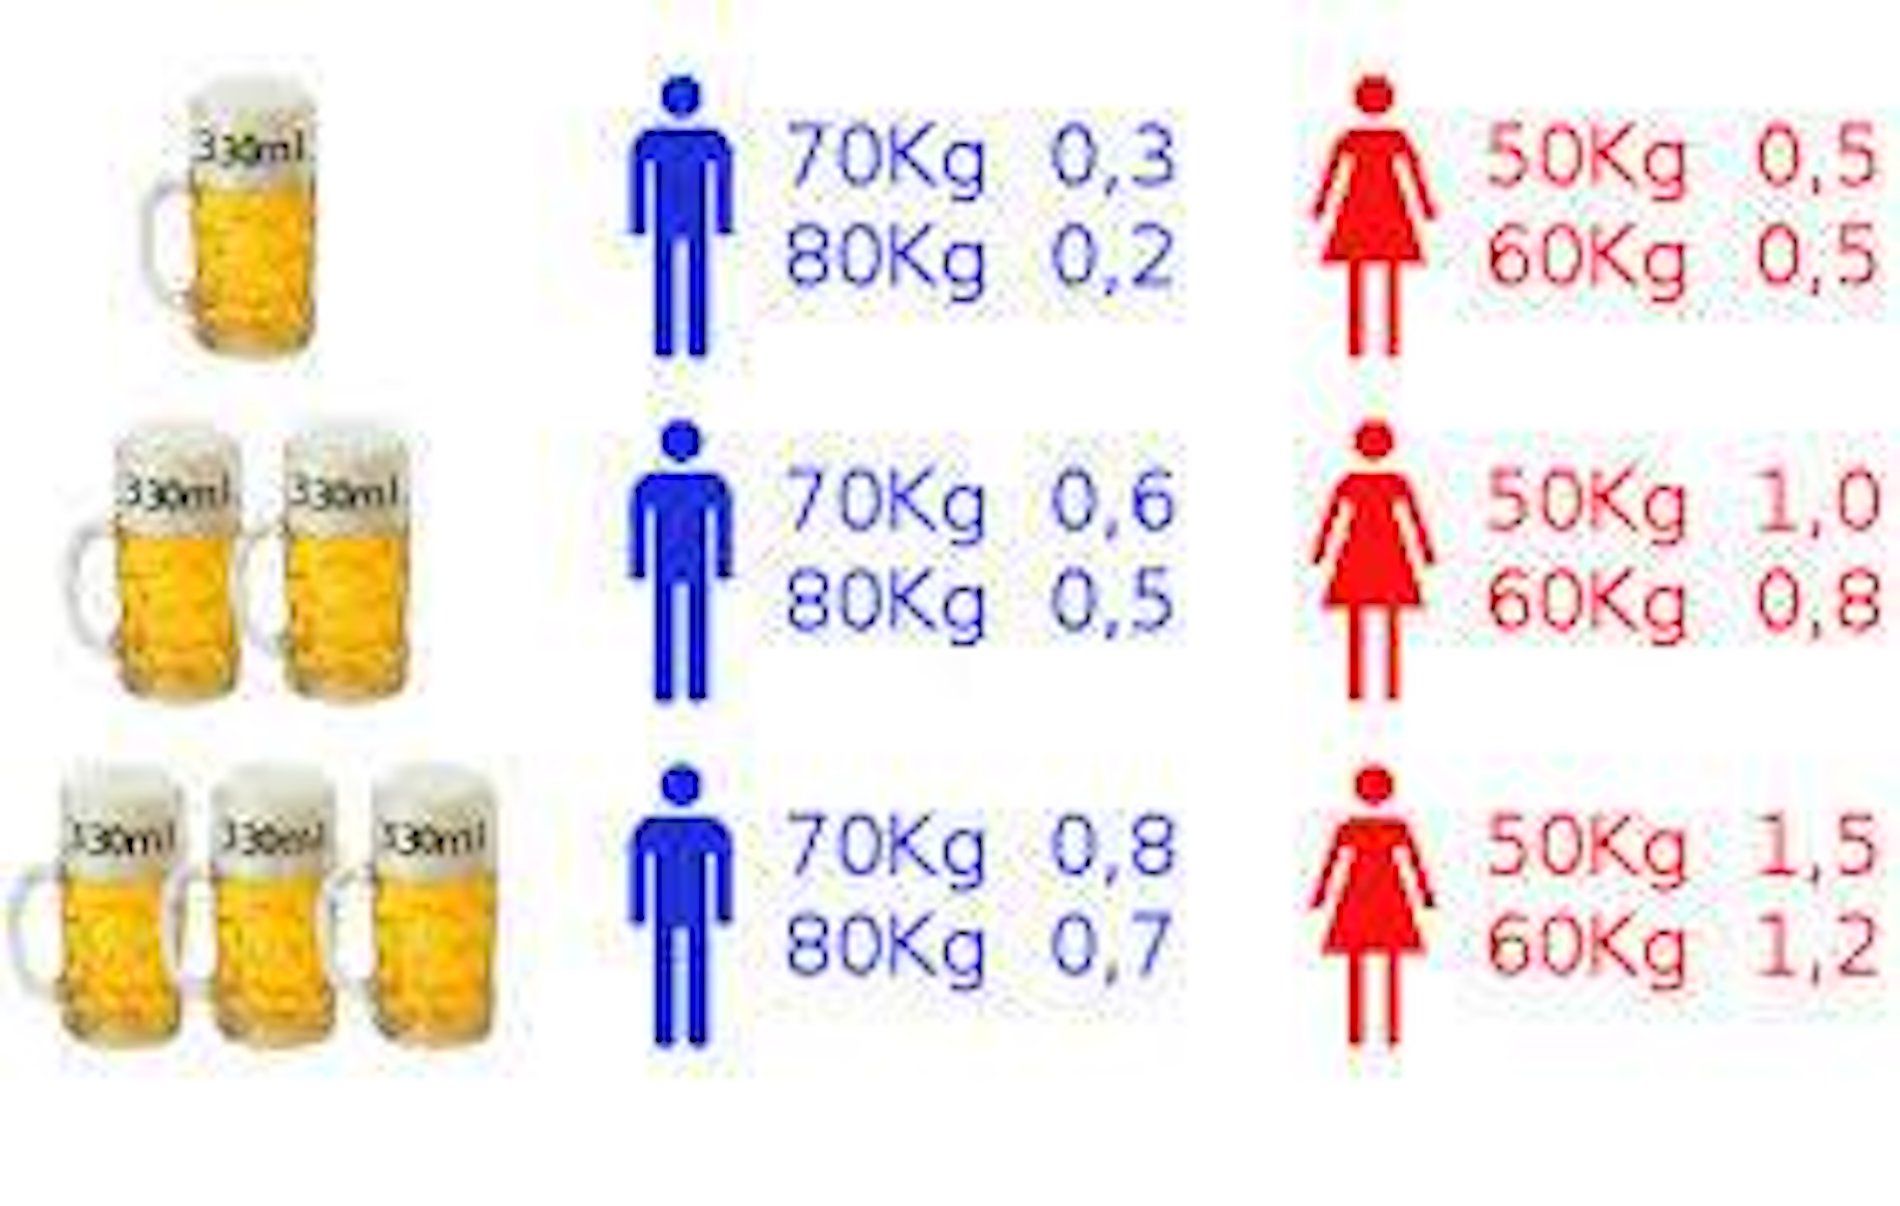 Esquema alcohol mujeres vs hombres / Guardia Civil